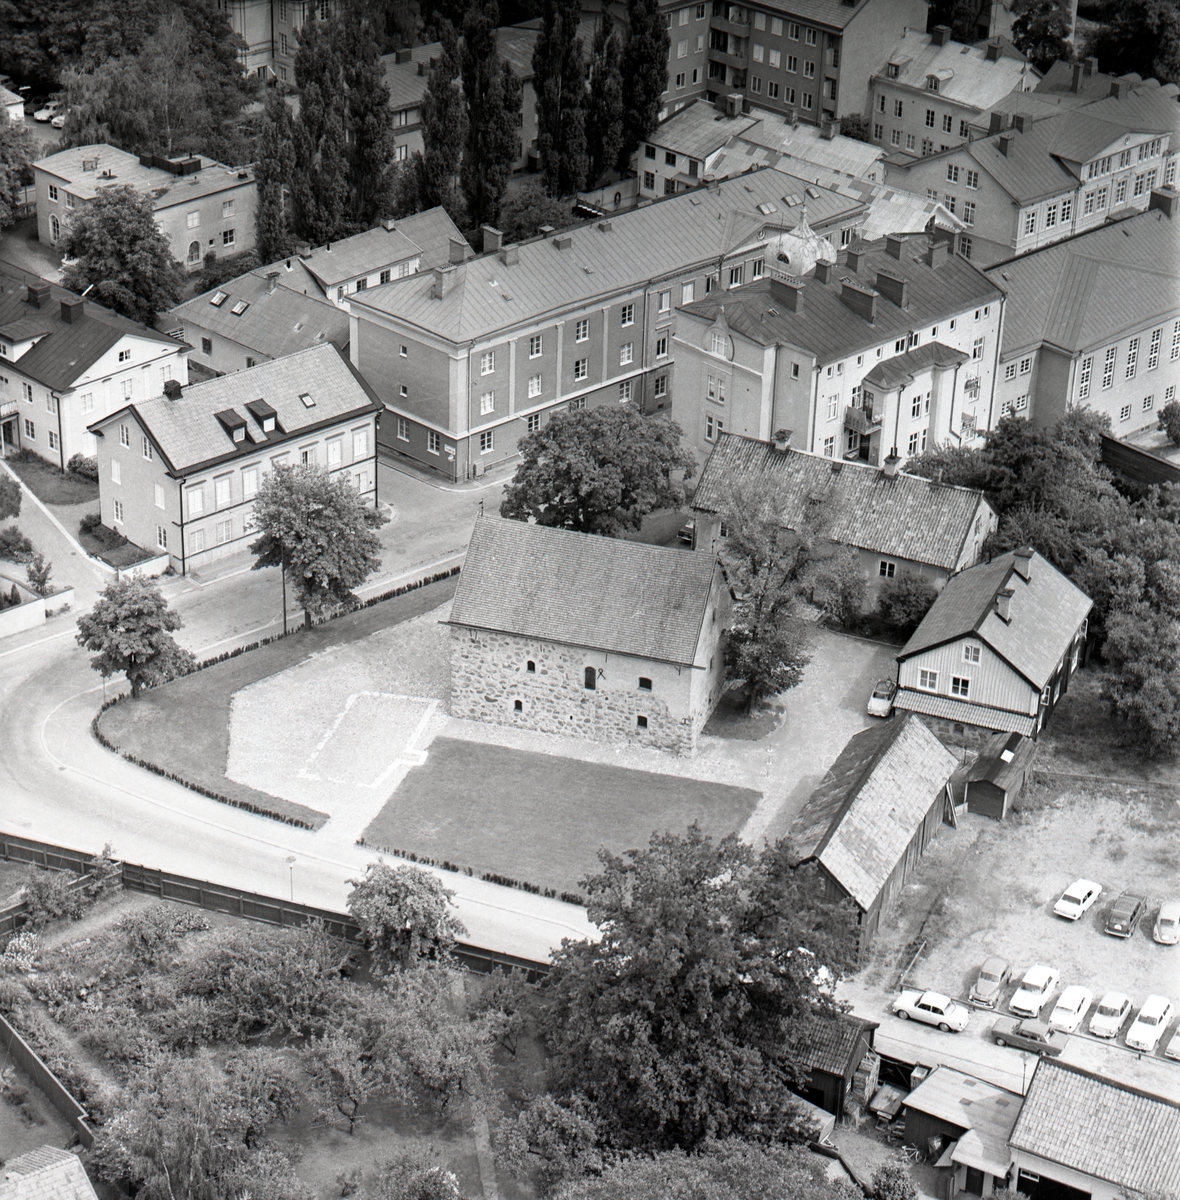 Flygvy över Rhyzeliusgården med omnejd. Korsningen Gråbrödragatan/Kungsgatan.
Stenbyggnaden har i folkmun kallats Klostret. Huset uppfördes först på 1400-talet och hade då trappgavlar. Det var då bostadshus i en större gårdsanläggning. På 1500-talet ingick byggnaden en period i den dåvarande biskopsgården. På 1600- och 1700-talen var här domprostgård. 1737 lät Rhyzelius reparera byggnaden, som byggdes om till magasin.
Rhyzeliusgården, den gula byggnaden, uppförd 1723-24 som bostad åt domprosten, sedermera biskopen, Andreas Rhyzelius. Flygeln uppförd 1725 som bostad åt hjälpprästen. Lokal för ett av Östgöta Correspondentens första tryckerier 1841-1843, då även tidningens grundare H B Palmaer bodde i gården.